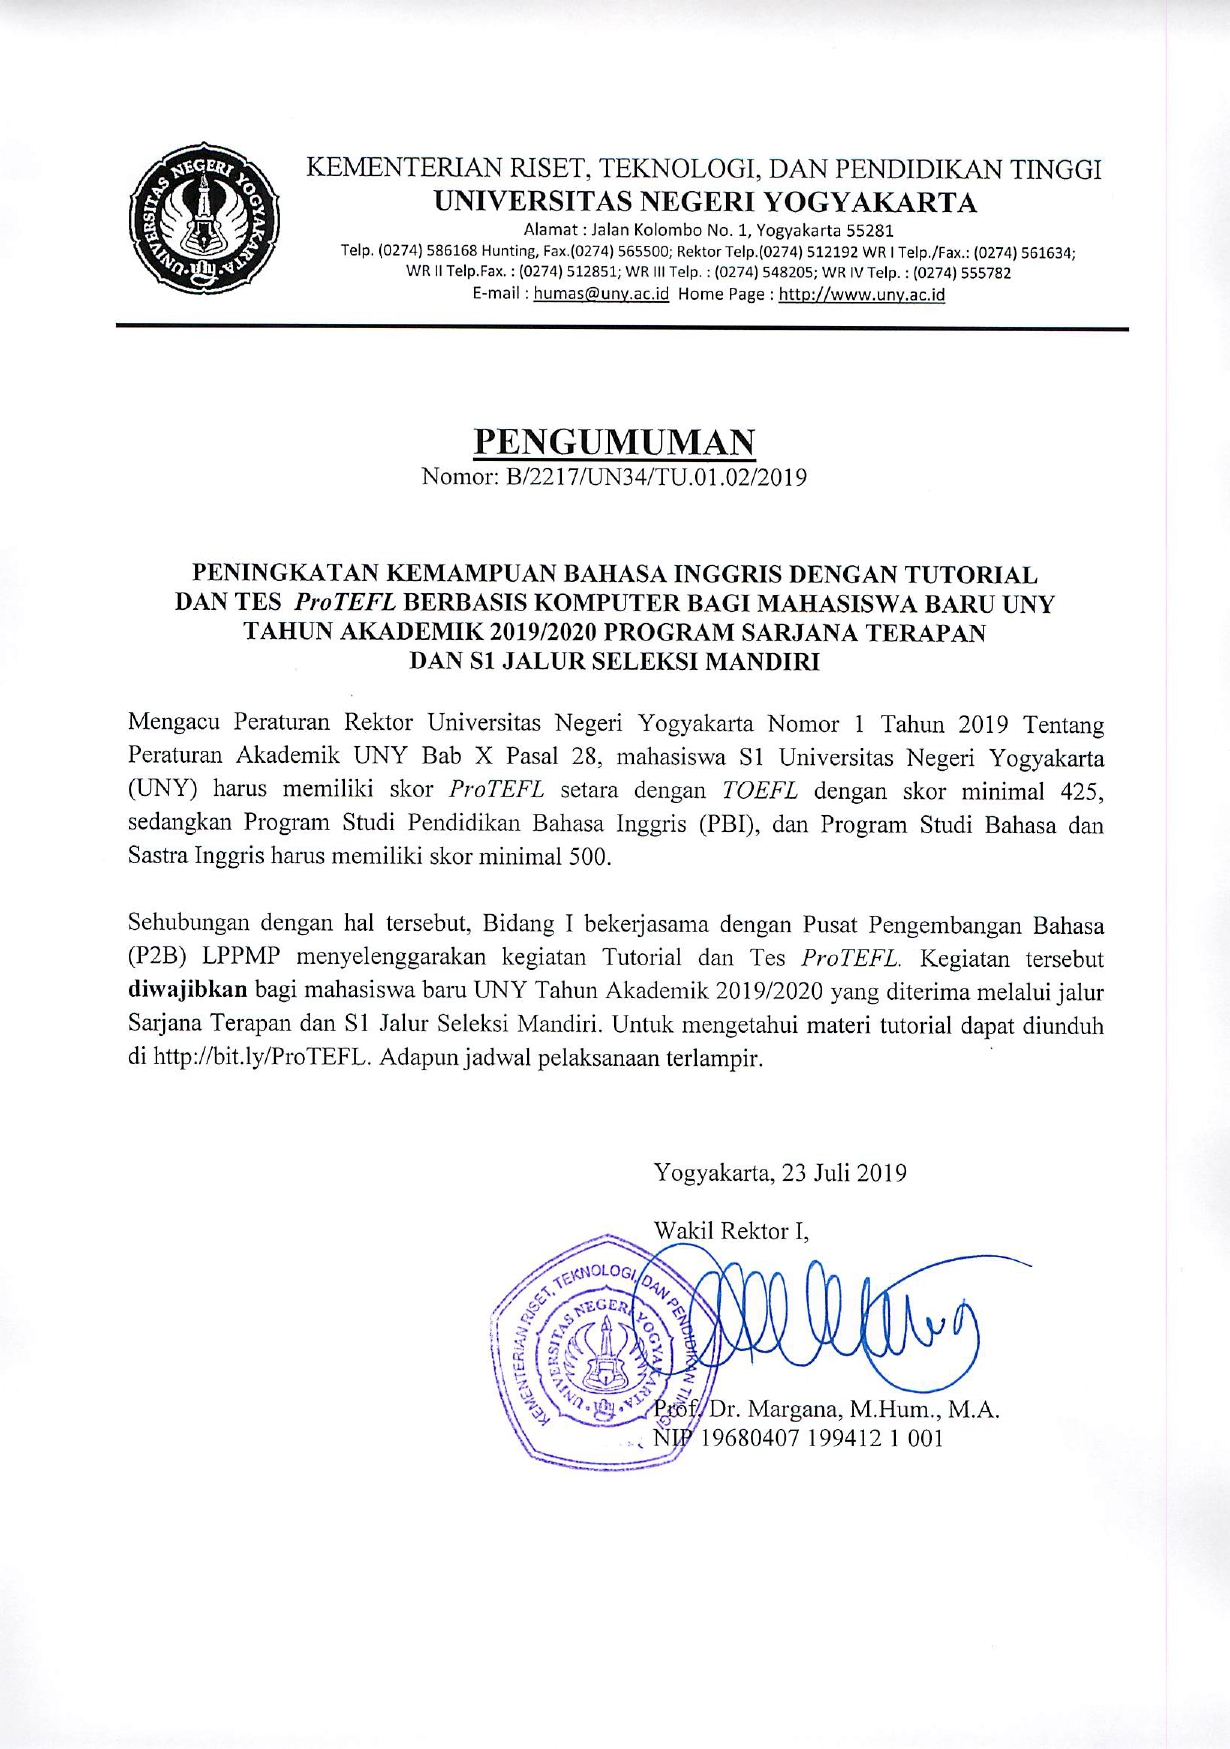 JADWAL TUTORIAL BAHASA INGGRIS DAN TEST PRO-TEFL BAGI MAHASISWA BARU JALUR SELEKSI MANDIRI S1 DAN D-IV TAHUN 2019